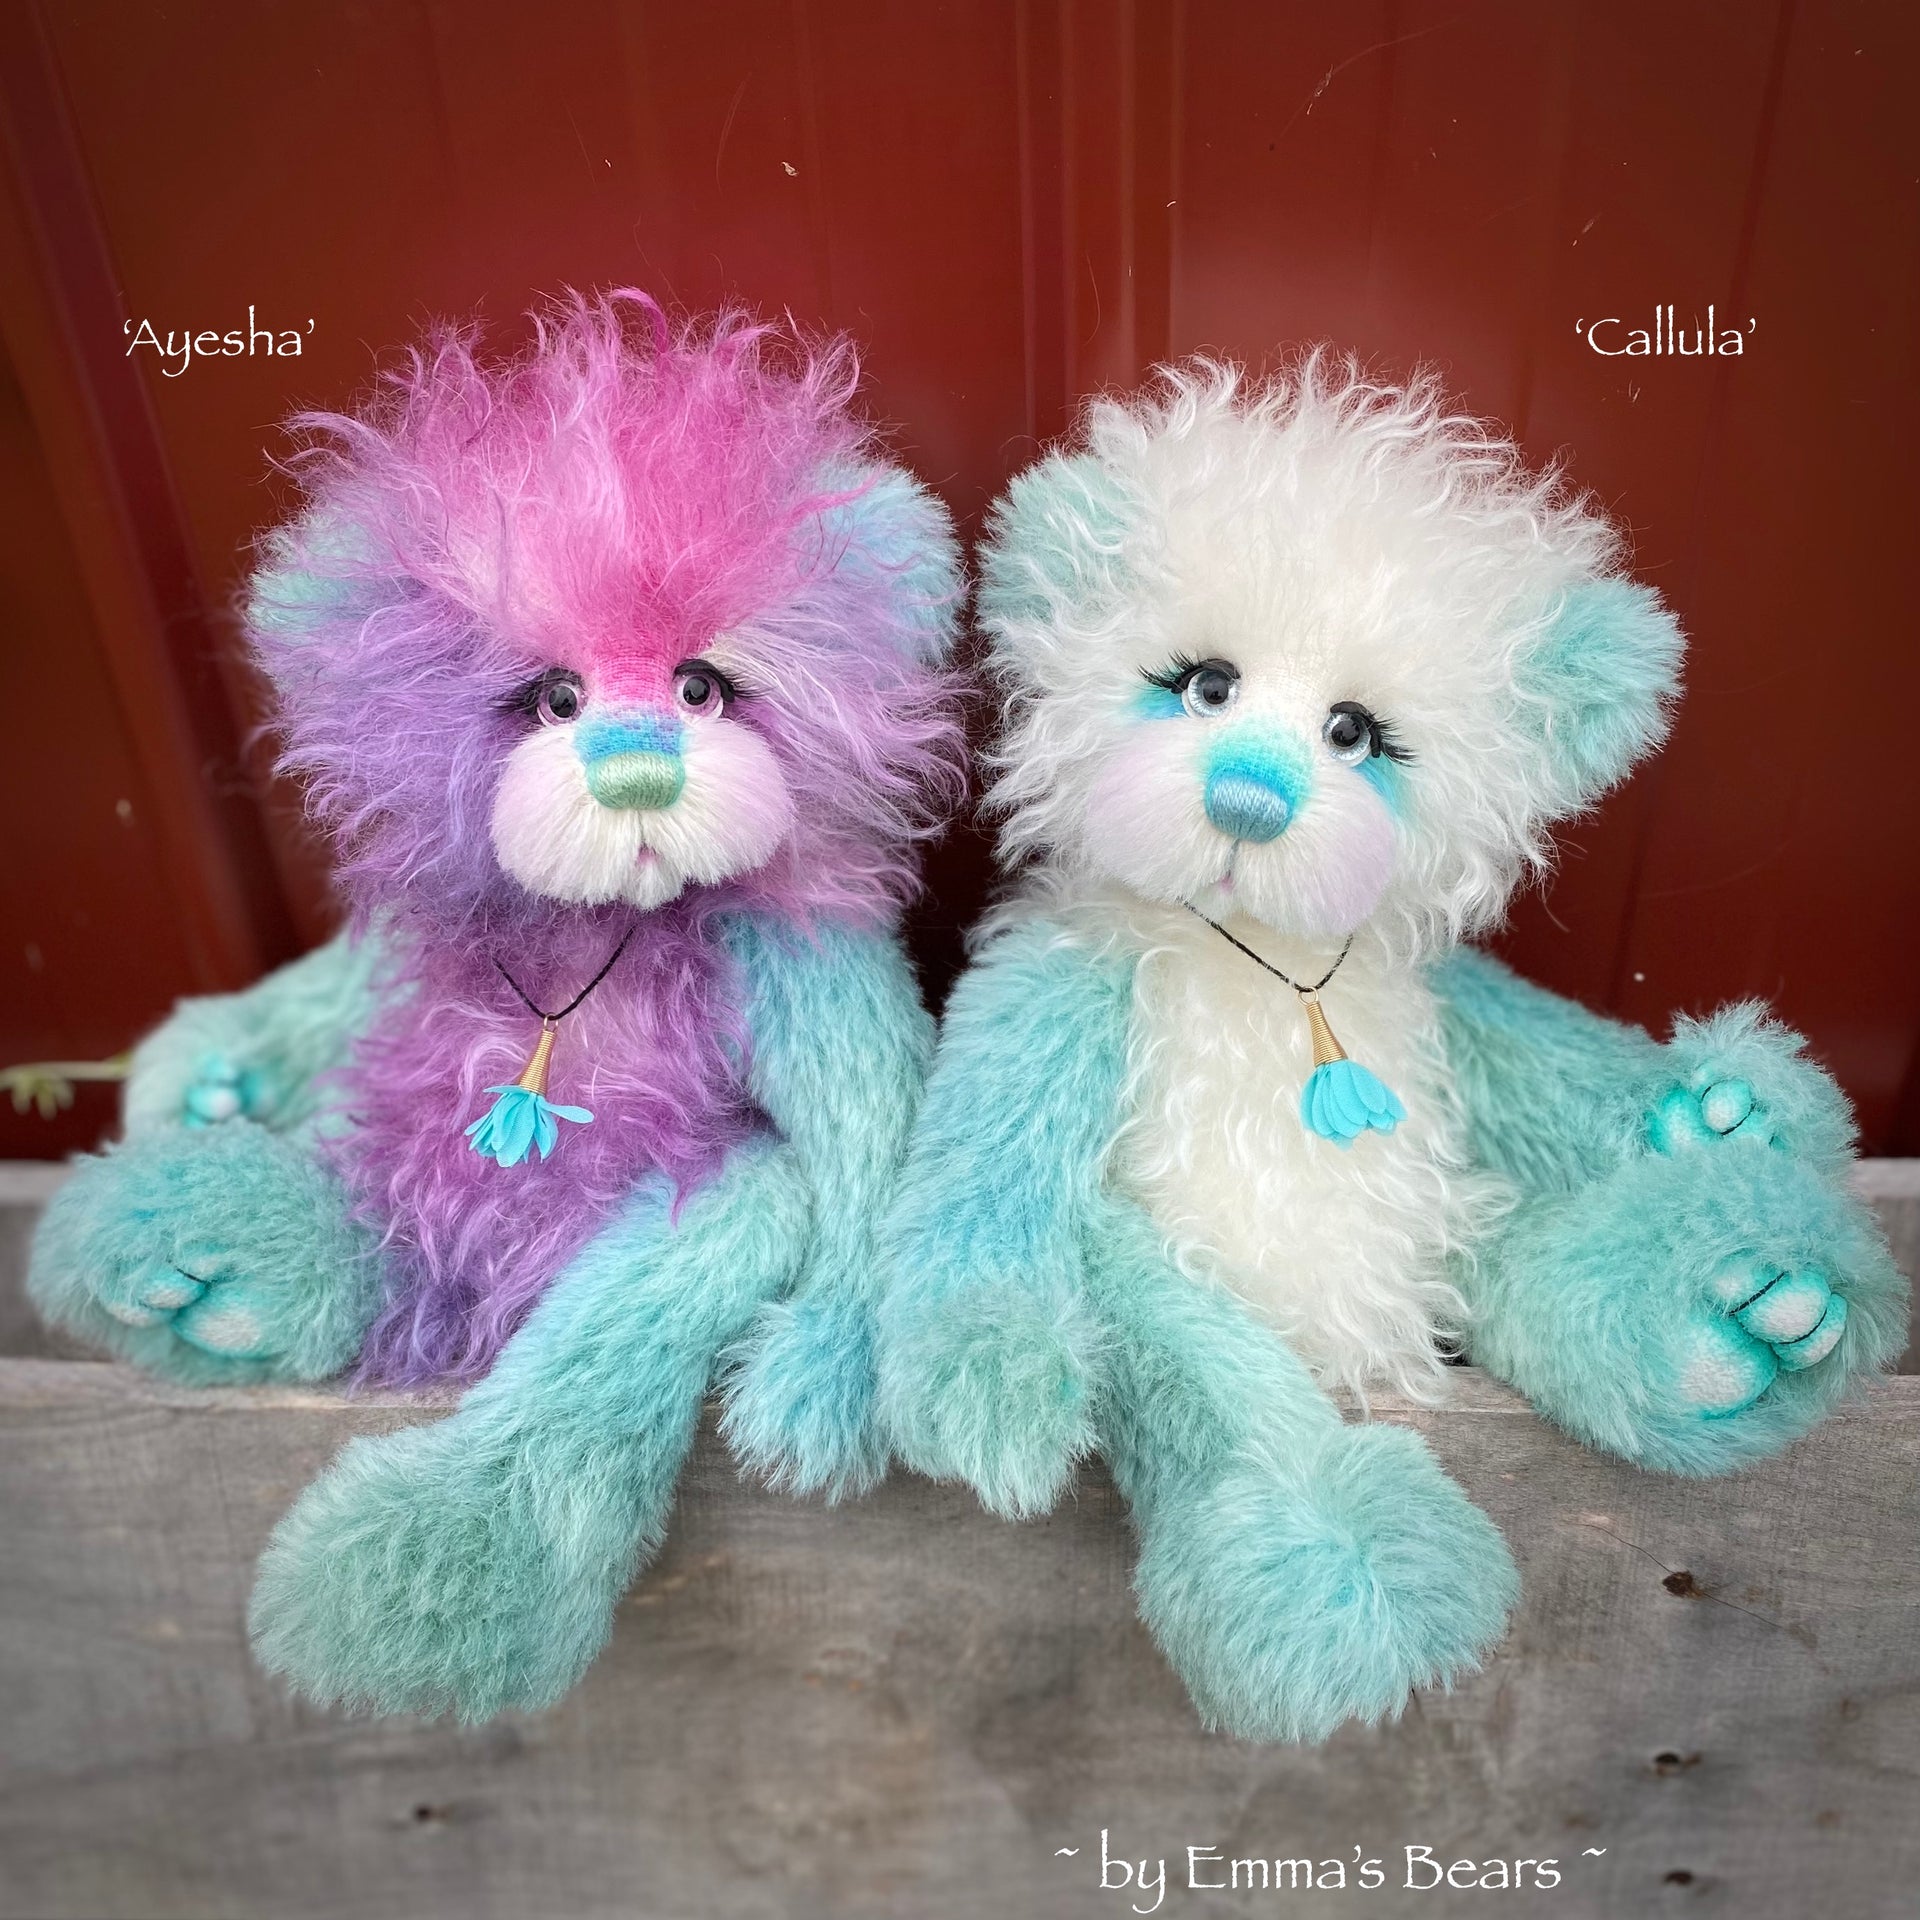 Callula - 12" Hand-Dyed Mohair and Alpaca artist bear by Emma's Bears - OOAK